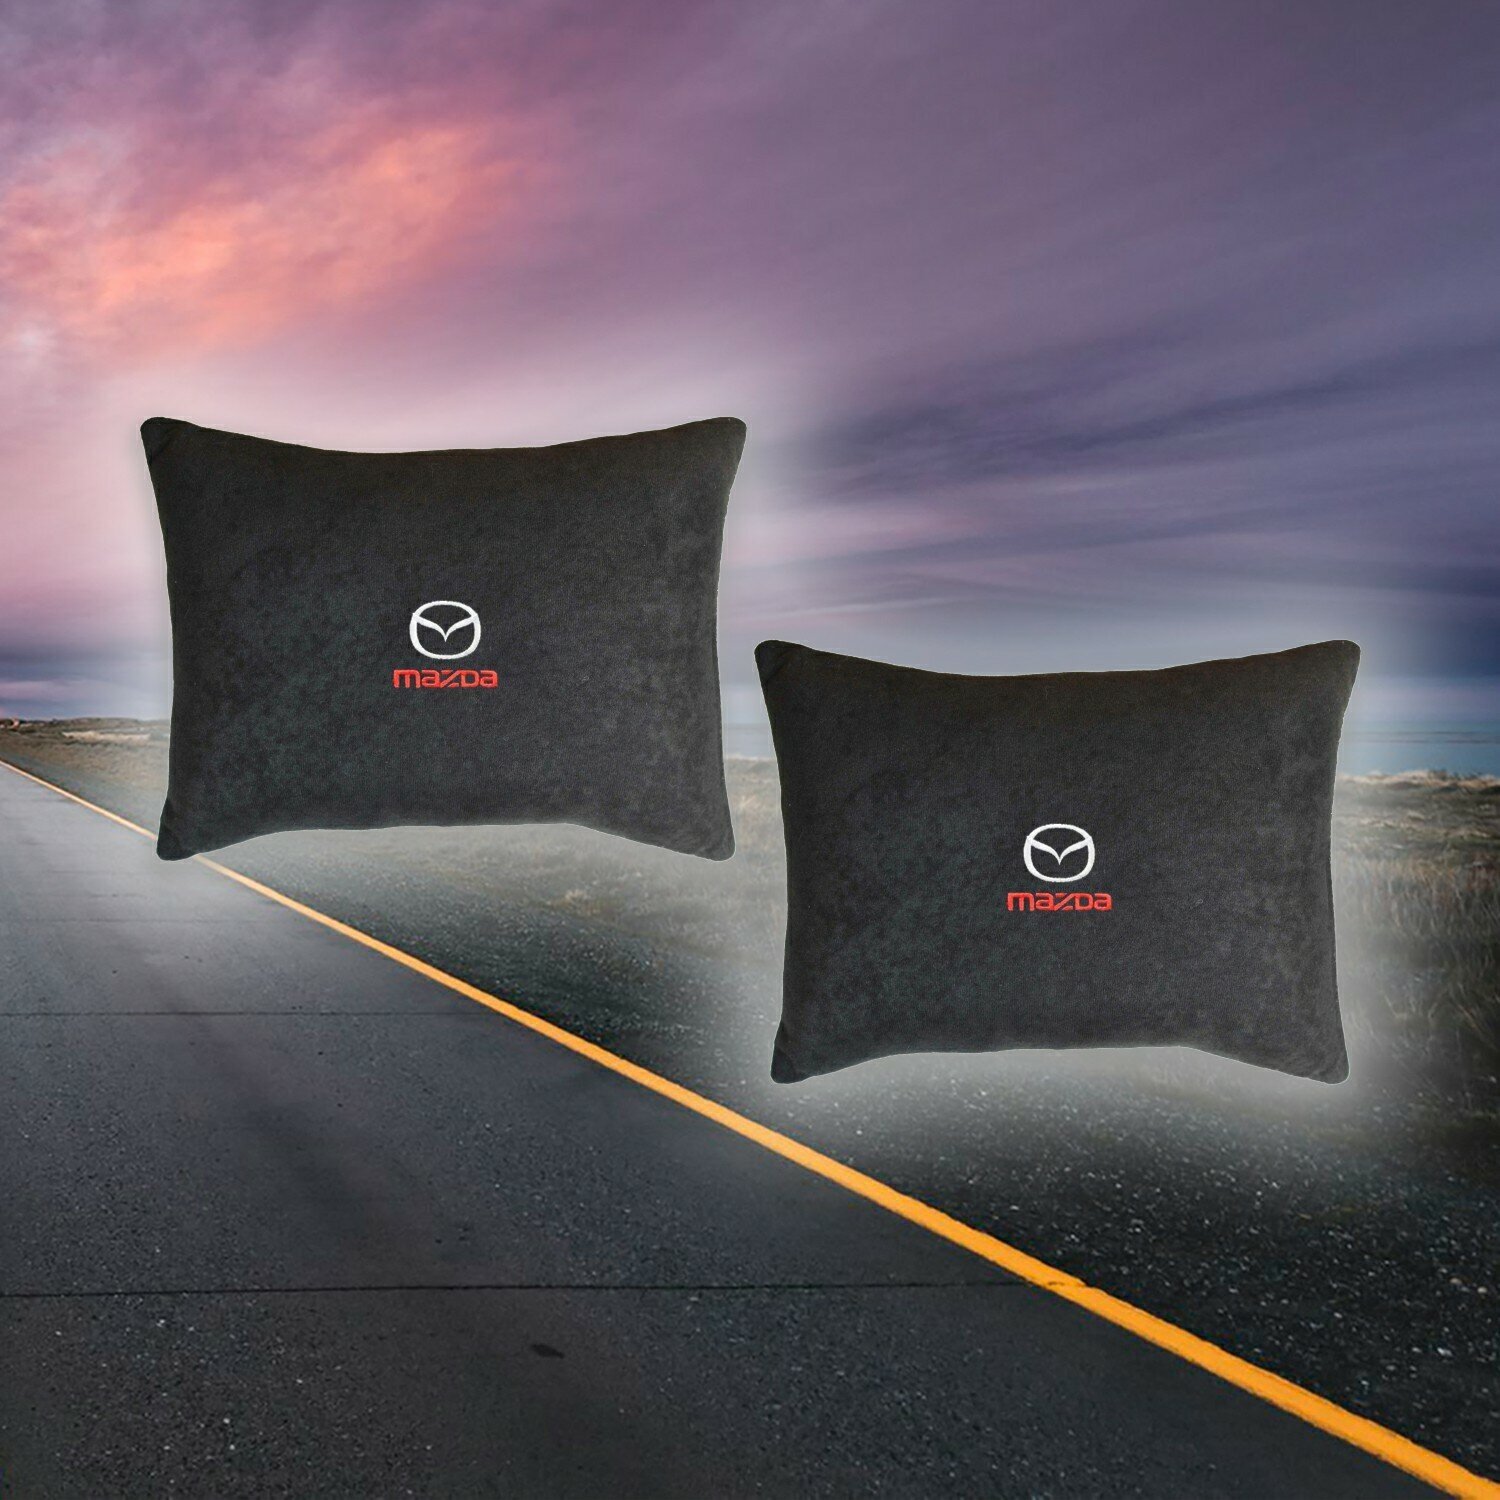 Подушка на сиденье автомобиля для Mazda из велюра черная 2 штуки